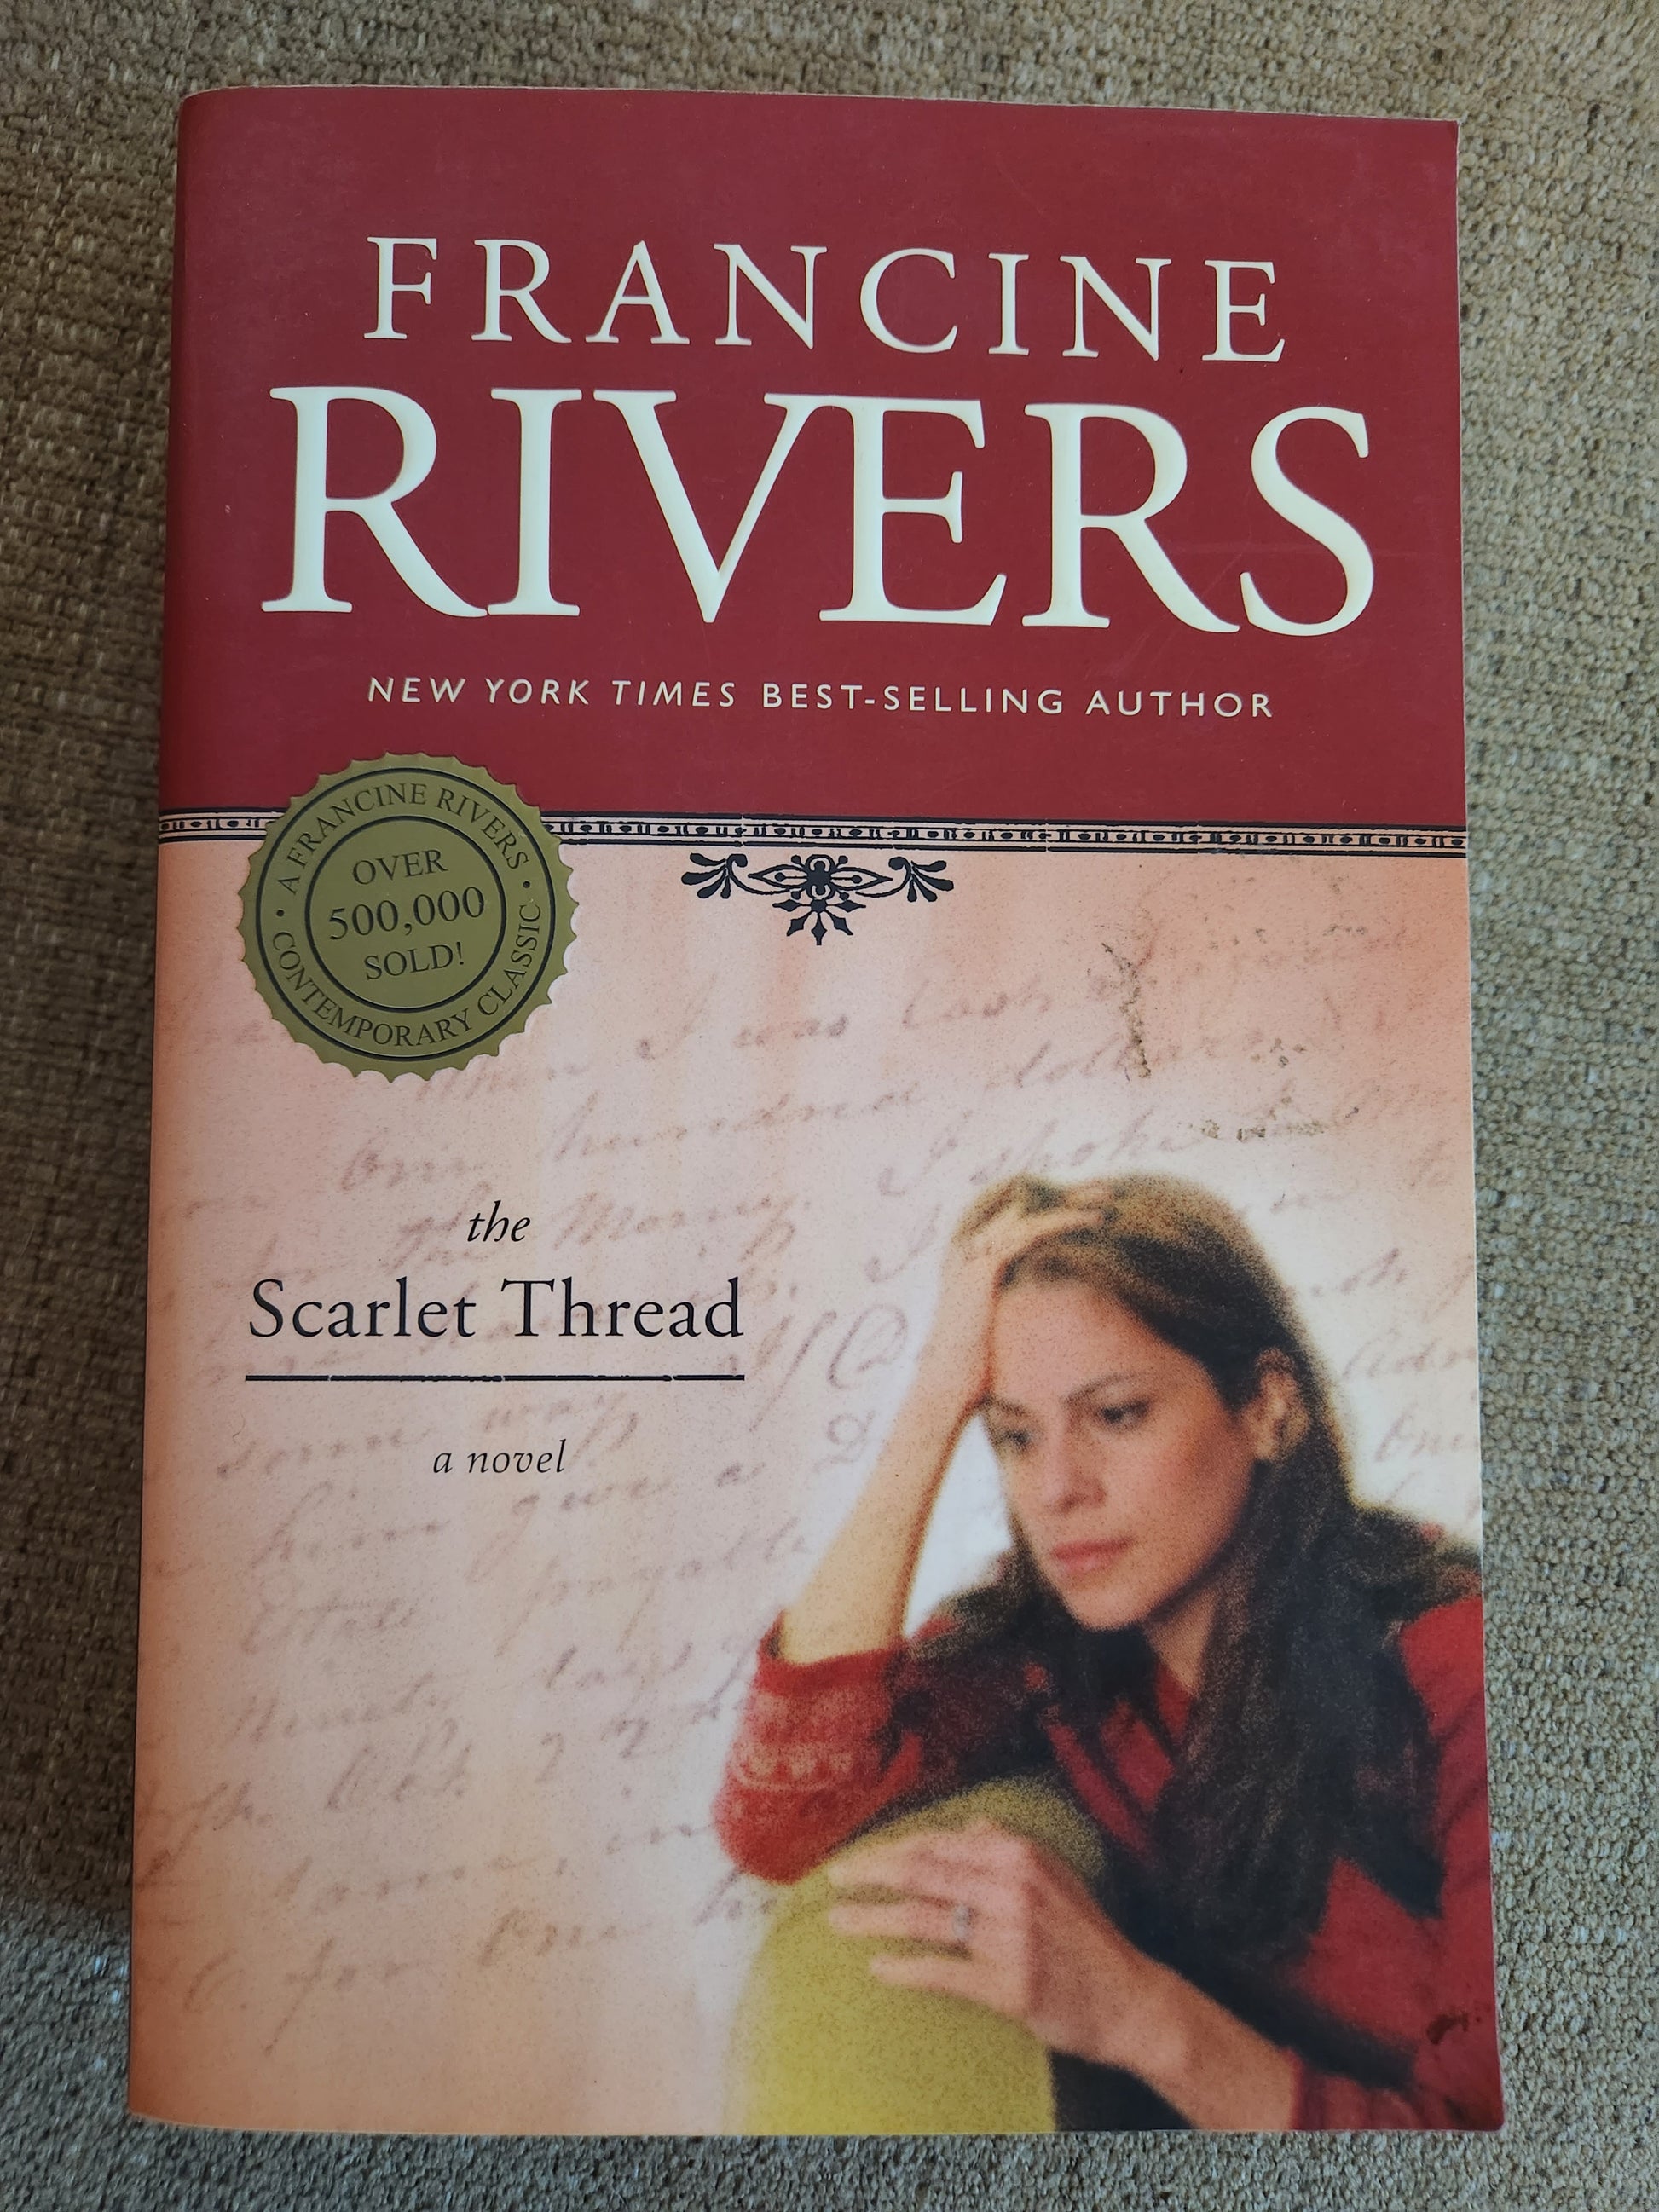 The Scarlett Thread by Francine Rivers - Dead Tree Dreams Bookstore